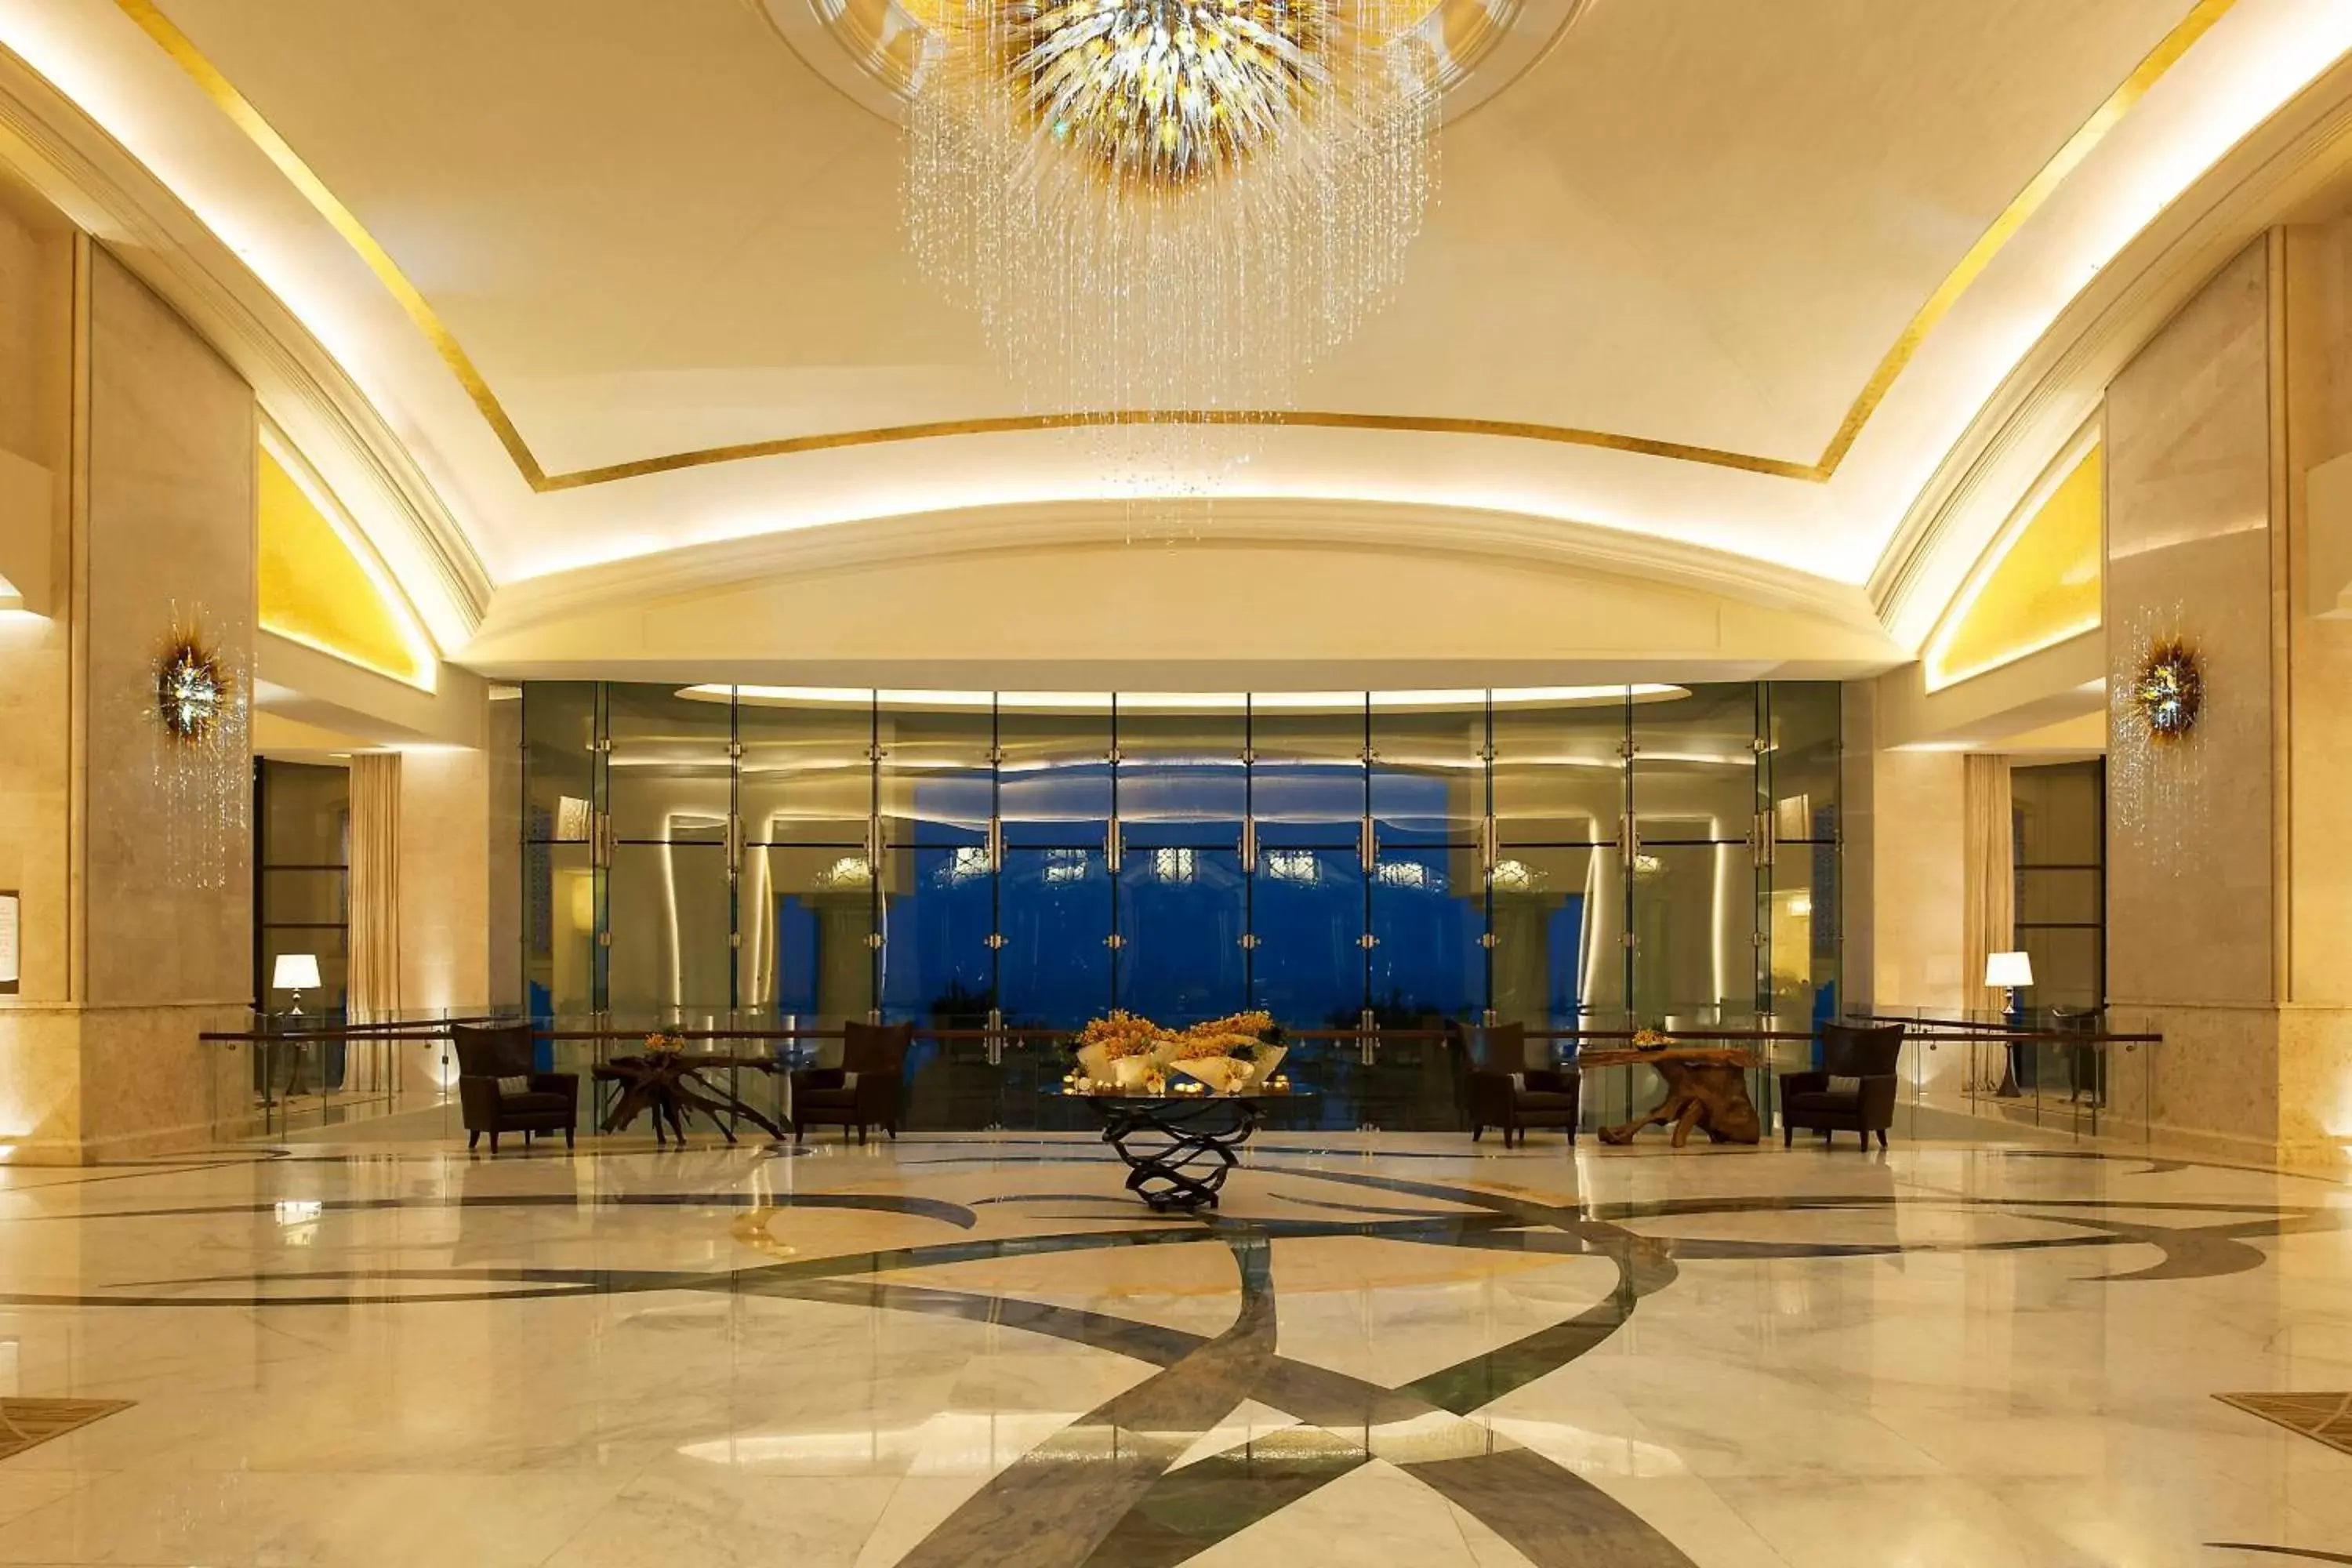 Lobby or reception, Lobby/Reception in The St. Regis Saadiyat Island Resort, Abu Dhabi